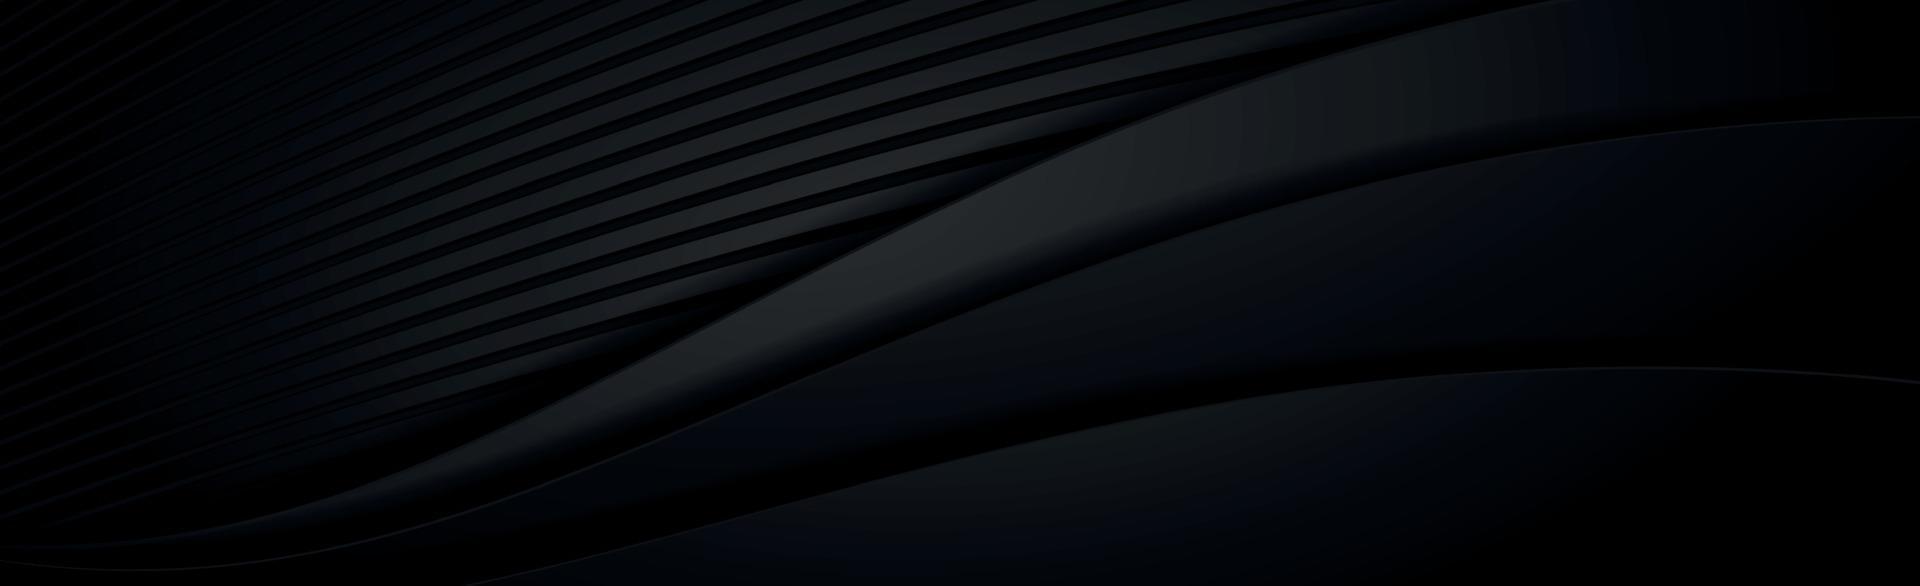 abstracte donkere zwarte getextureerde panoramische achtergrond - vector